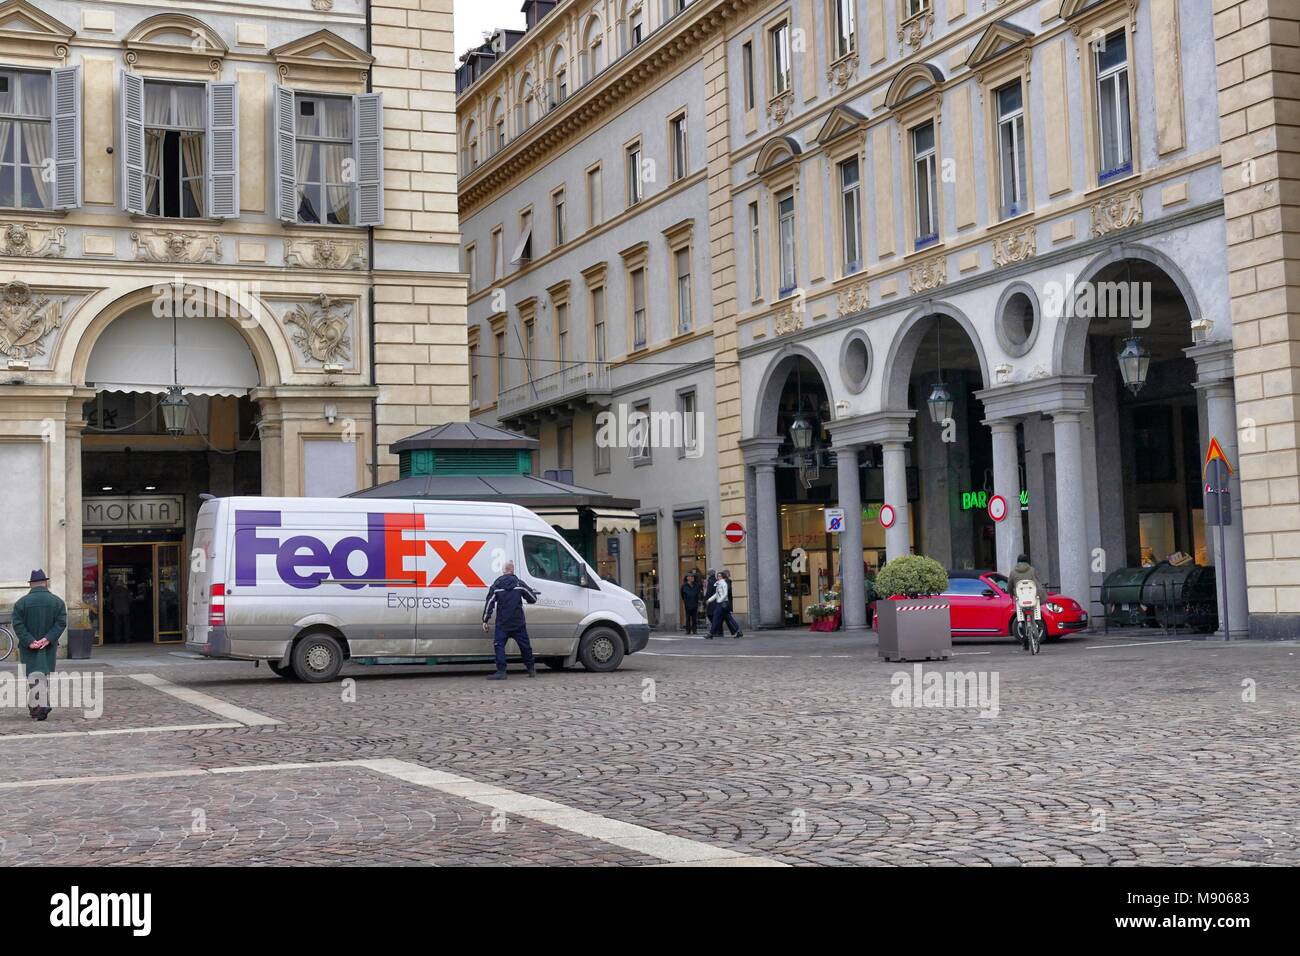 Parcel Service Lkw Federal Express fahren in der Innenstadt während der Lieferung runde Turin Italien am 12. März 2018 Stockfoto